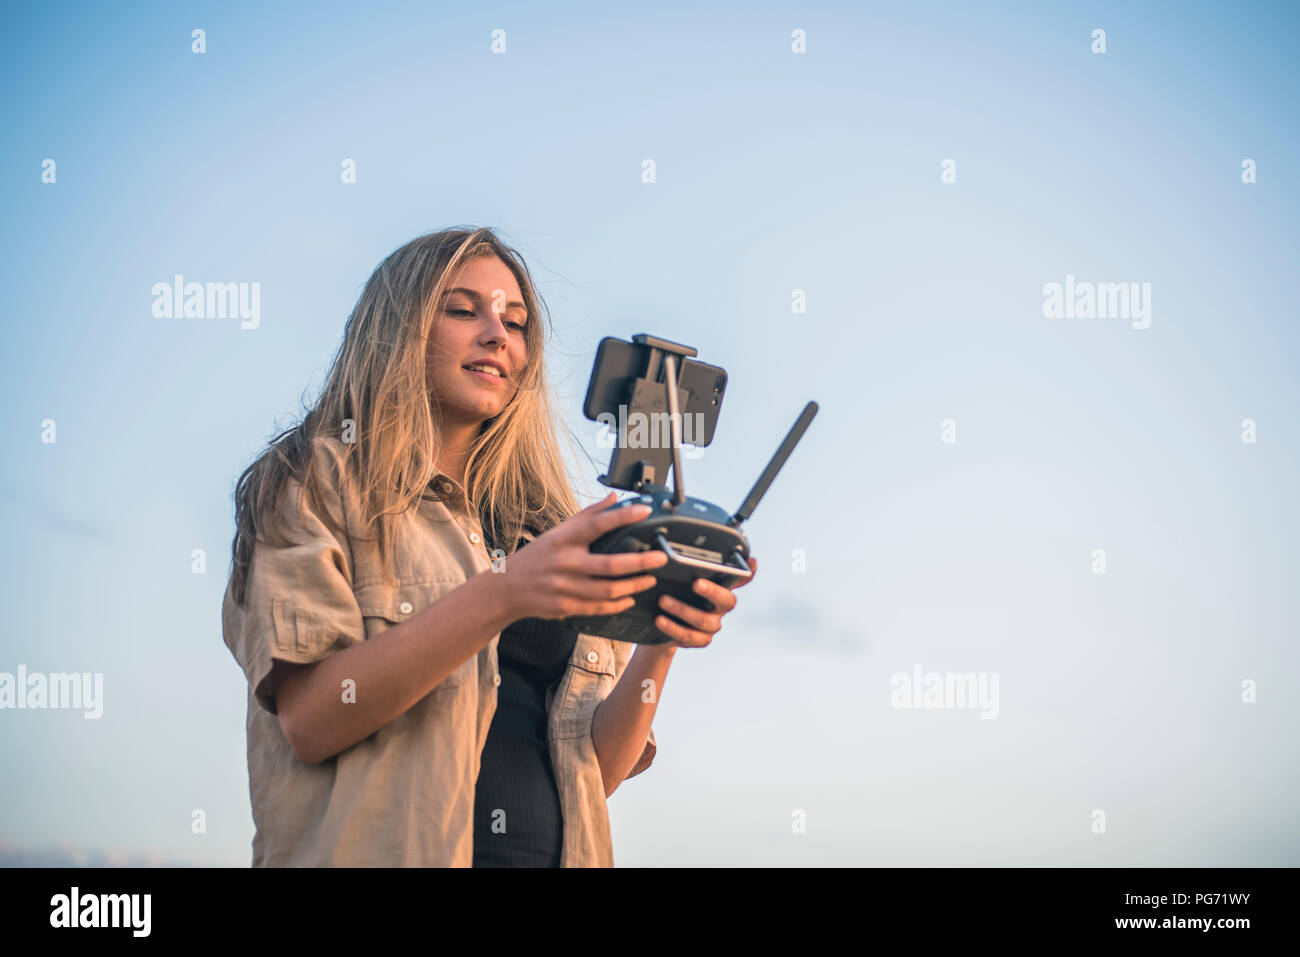 Giovane donna nel paese lato utilizzando un drone Foto Stock